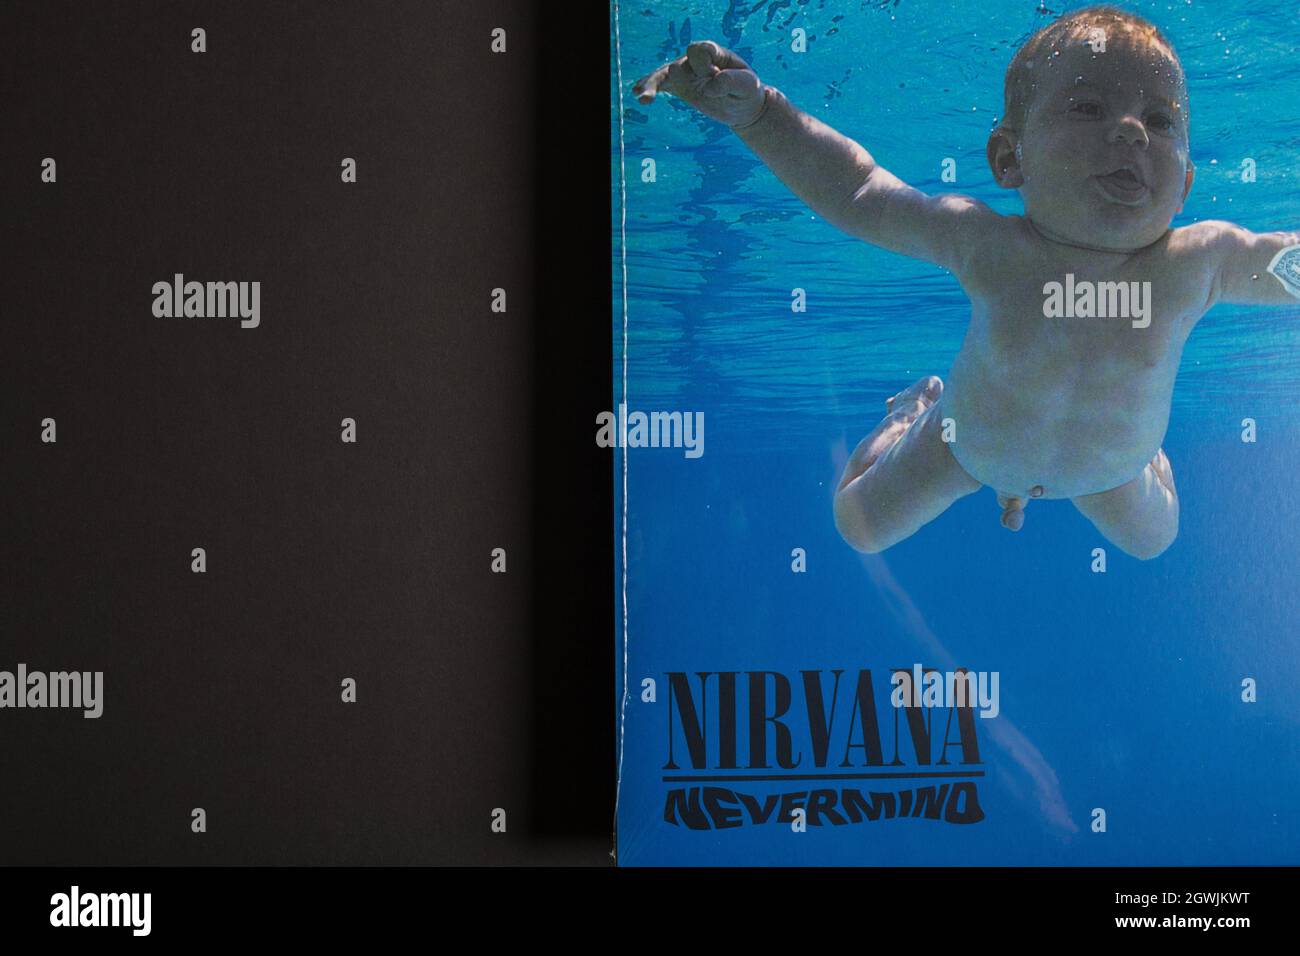 Moskau, Russland - 3. Oktober 2021: Nahaufnahme des Nevermind-Albums von Nirvana. Sealed LP Vinyl-Schallplatte. Stockfoto